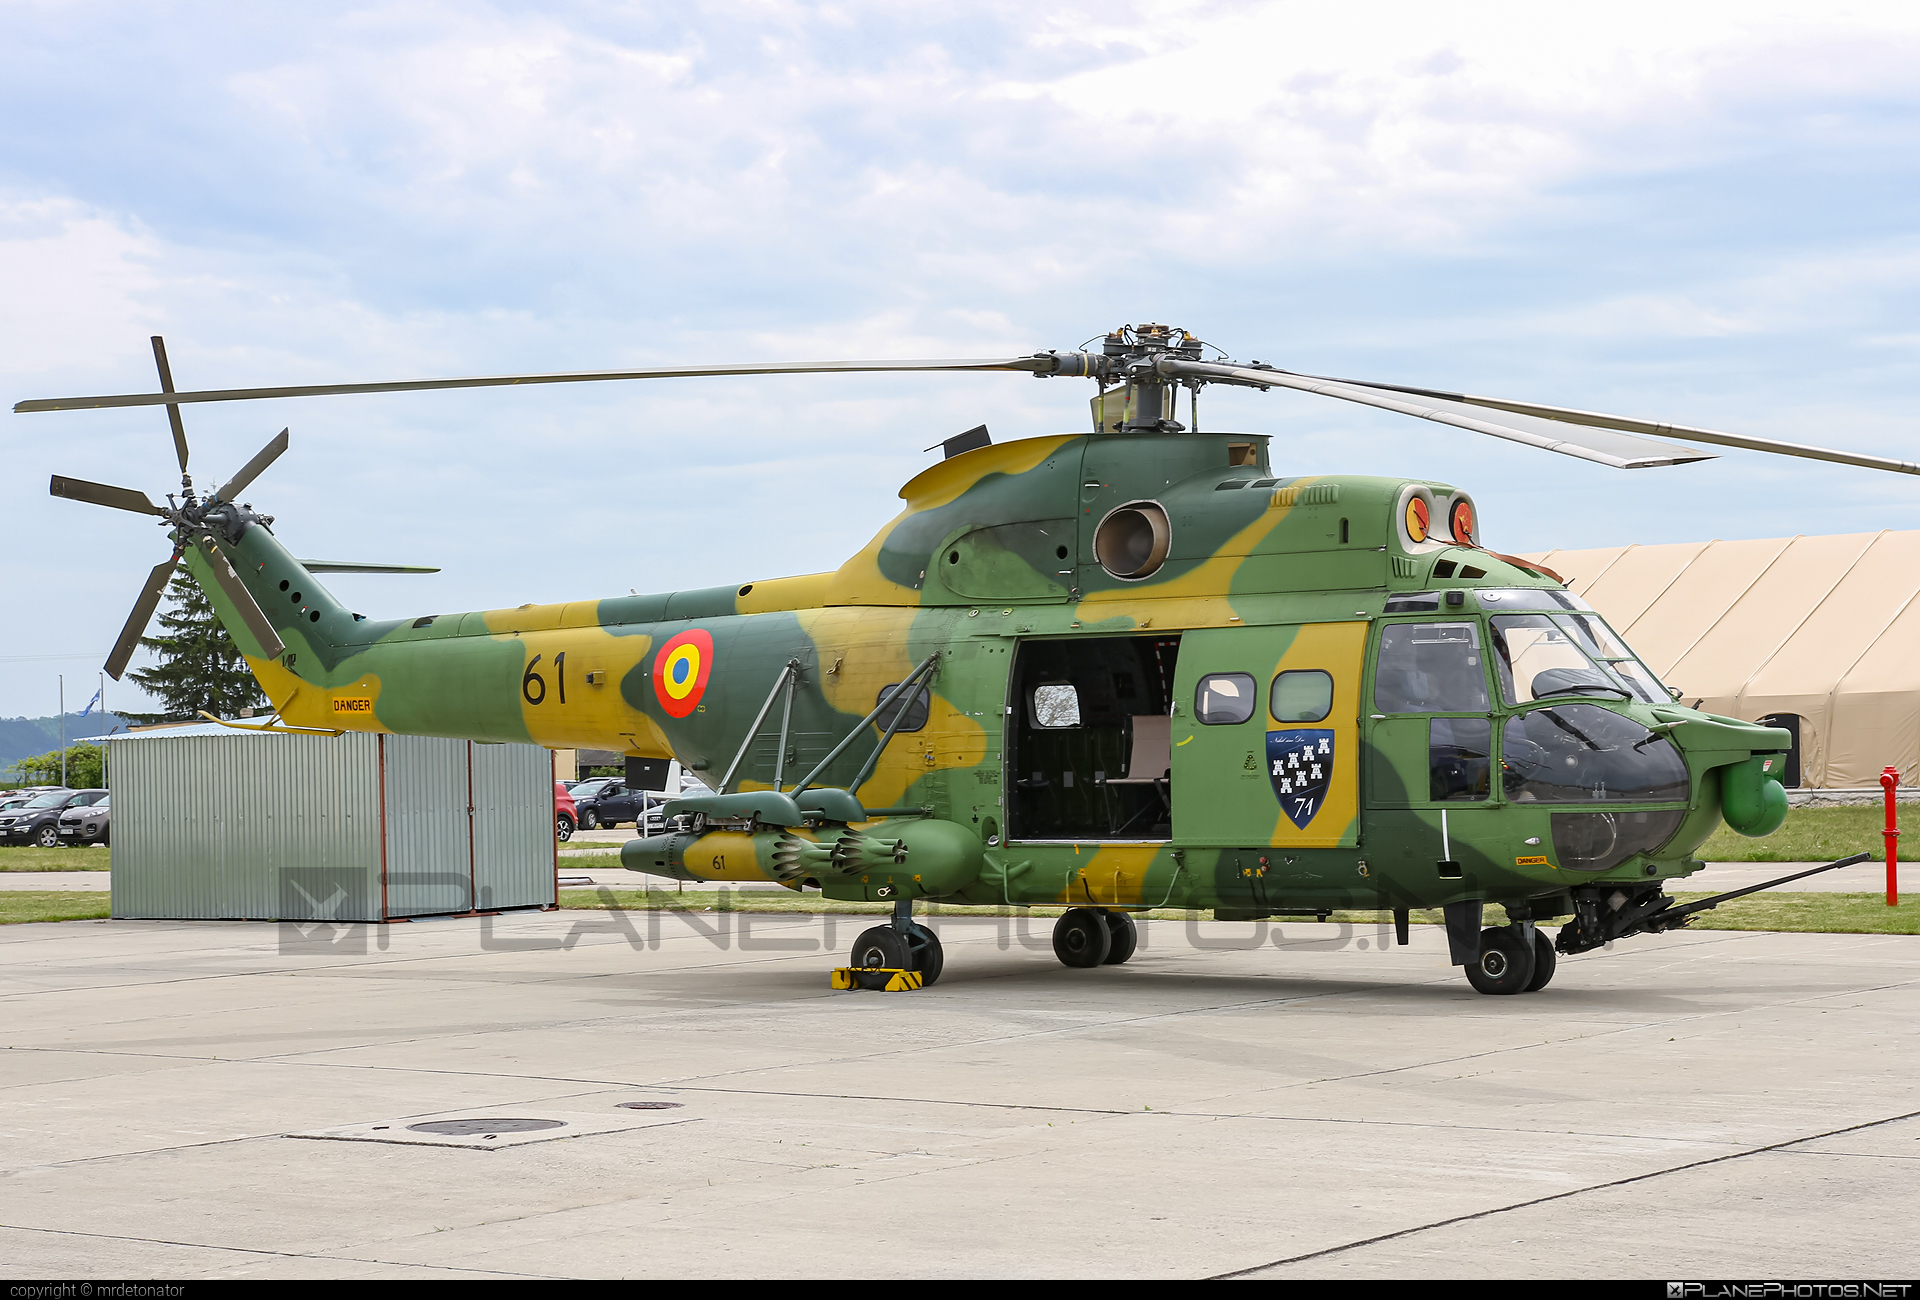 IAR 330L Puma SOCAT - 61 operated by Forţele Aeriene Române (Romanian Air Force) #forteleaerieneromane #iar #iar330 #iar330l #iar330lpuma #iar330lpumasocat #iar330puma #industriaAeronauticaRomana #romanianairforce